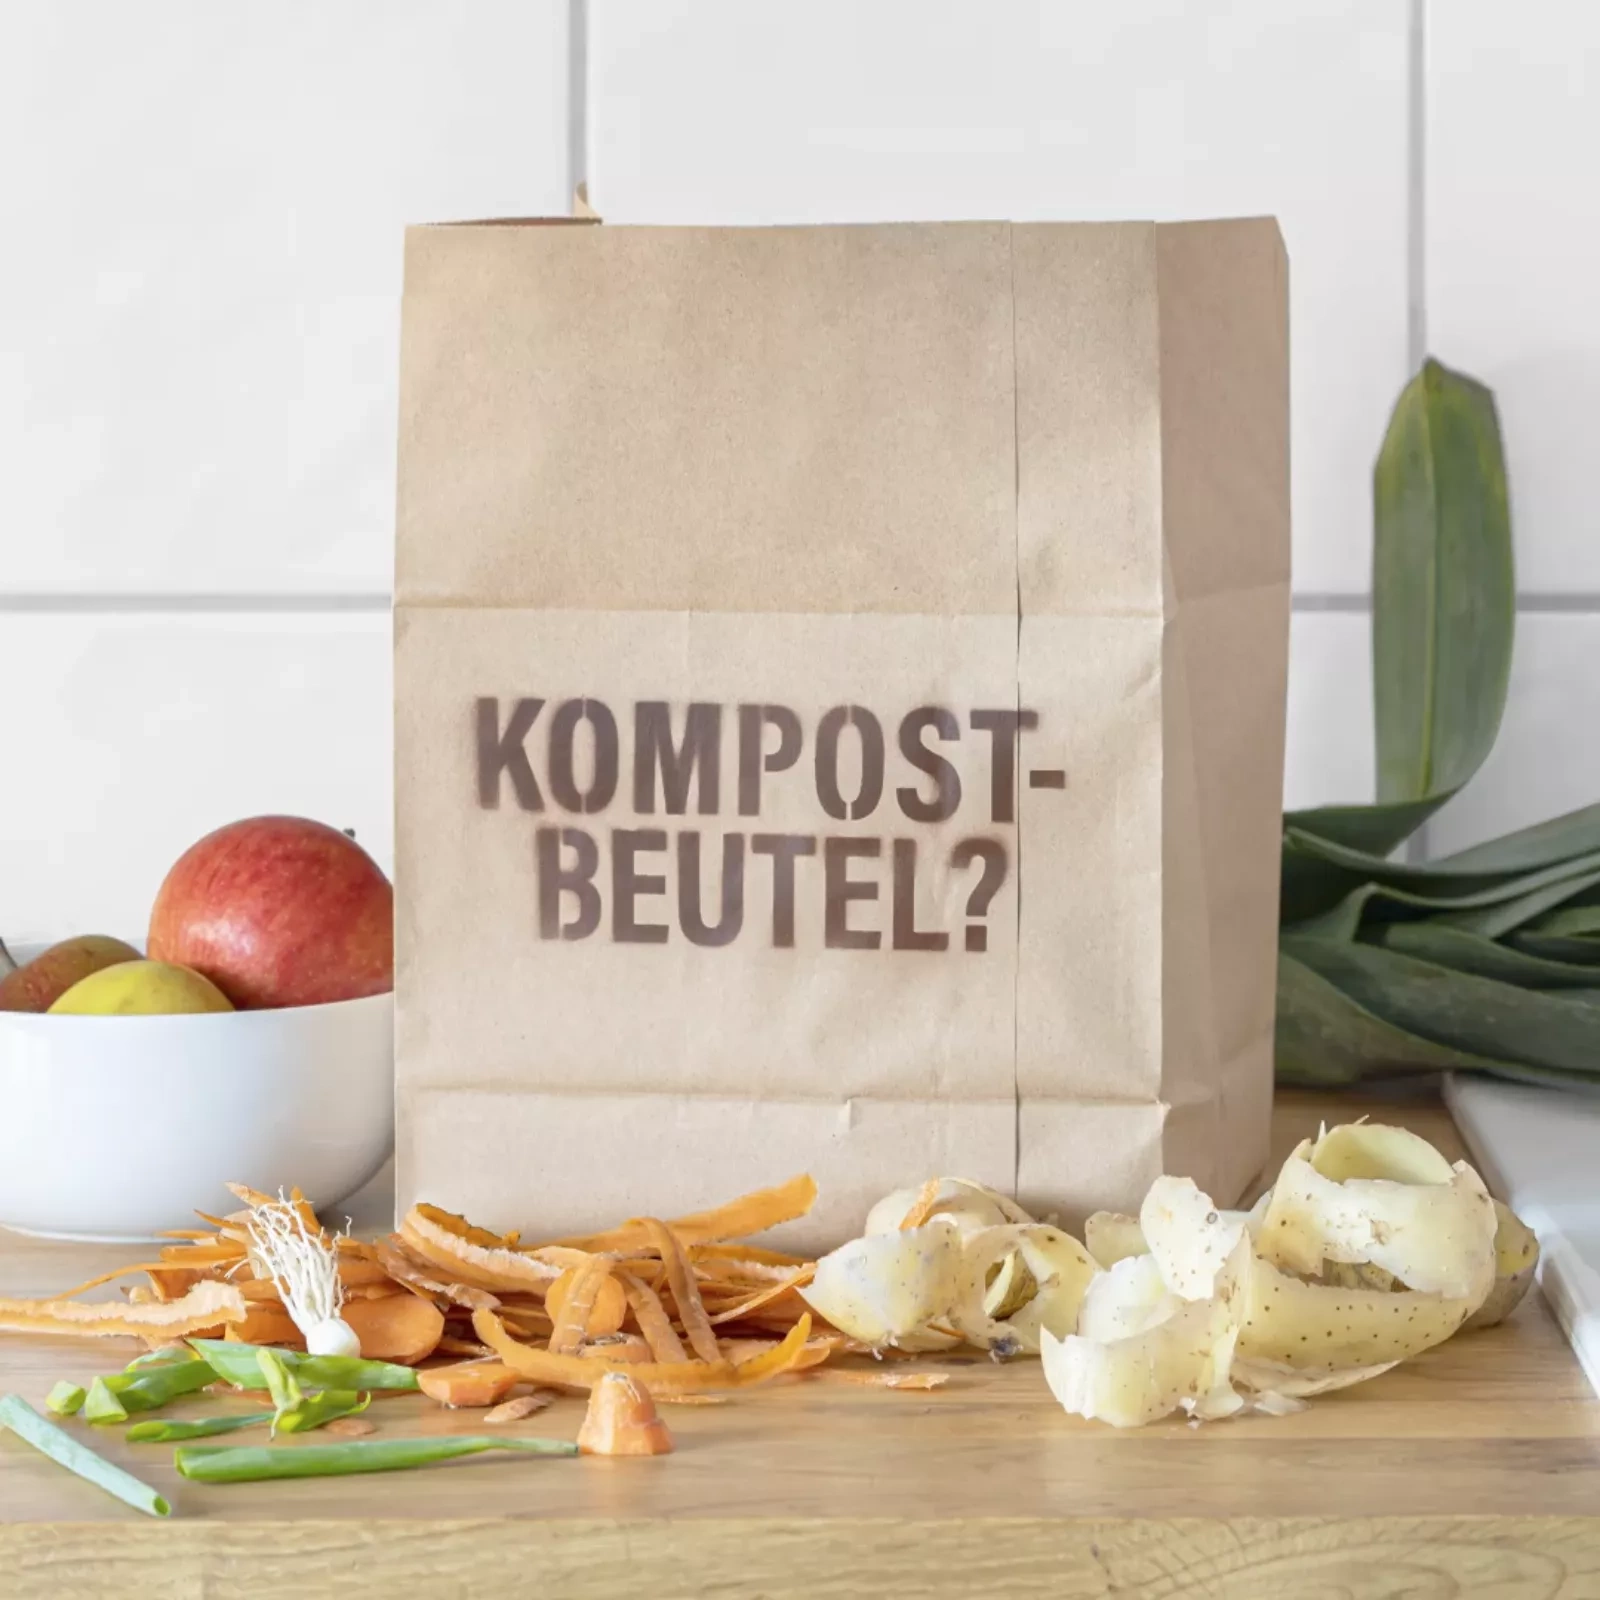 Ein Kompostbeutel aus Papier steht auf der Küchenablage. Das Wort "Kompostbeutel?" steht darauf geschrieben. Rund herum liegen Obst und verschiedene Gemüseschalen. 